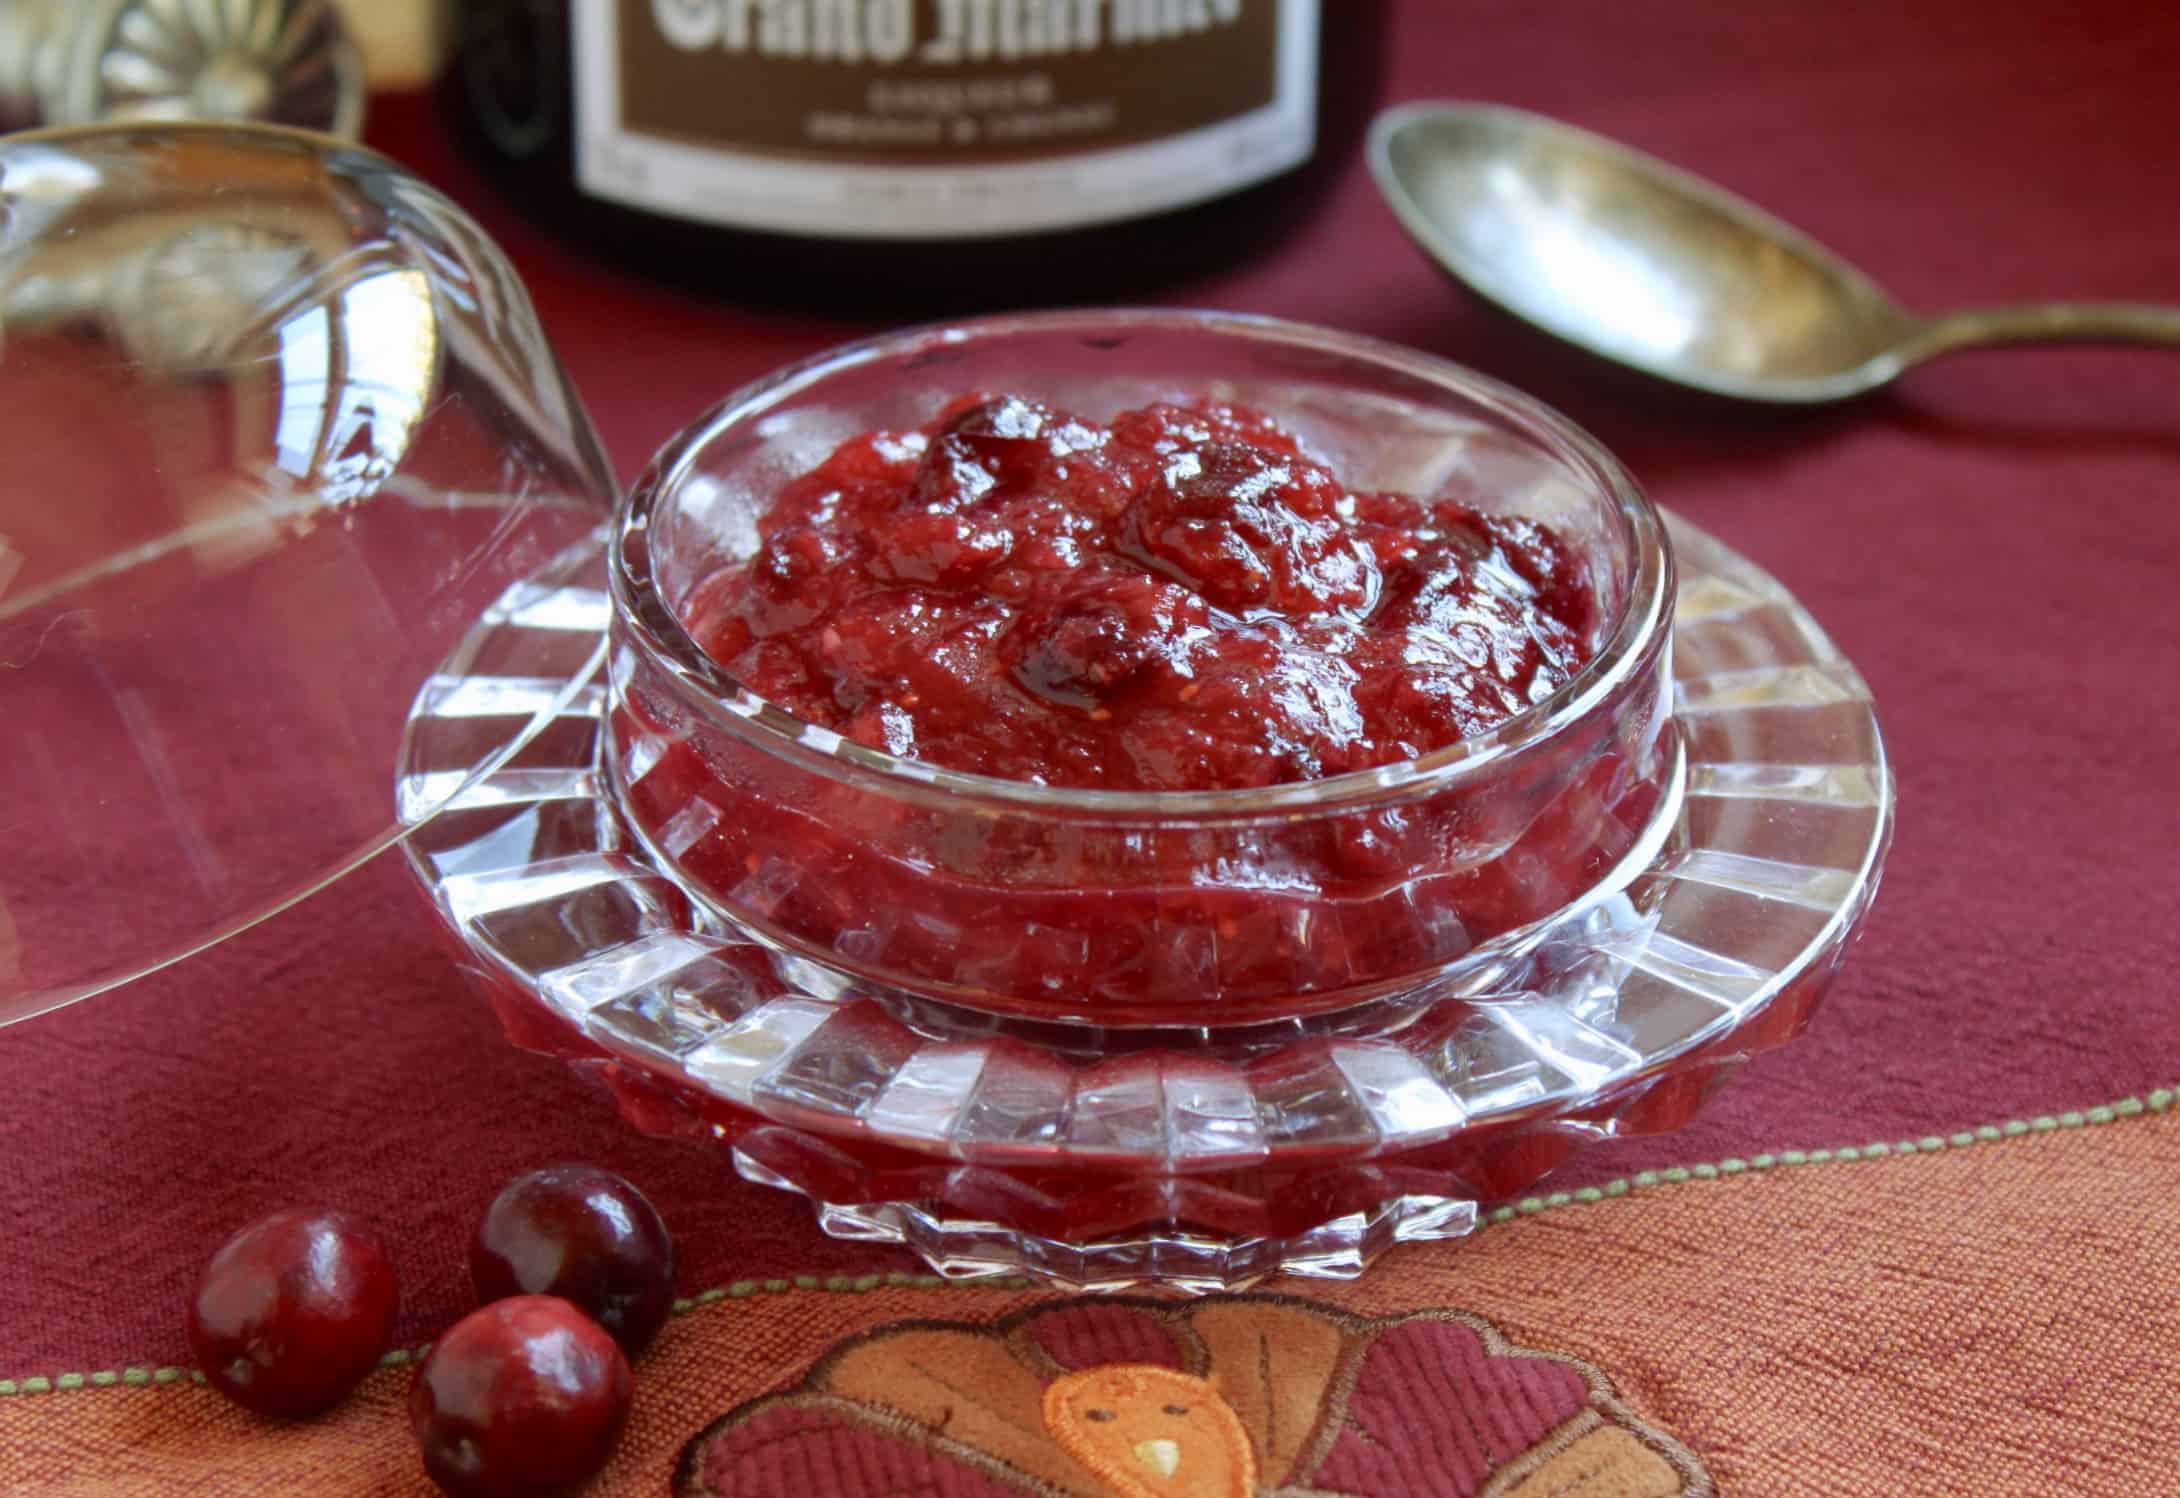 Grand Marnier Orange Cranberry Sauce homemade recipe